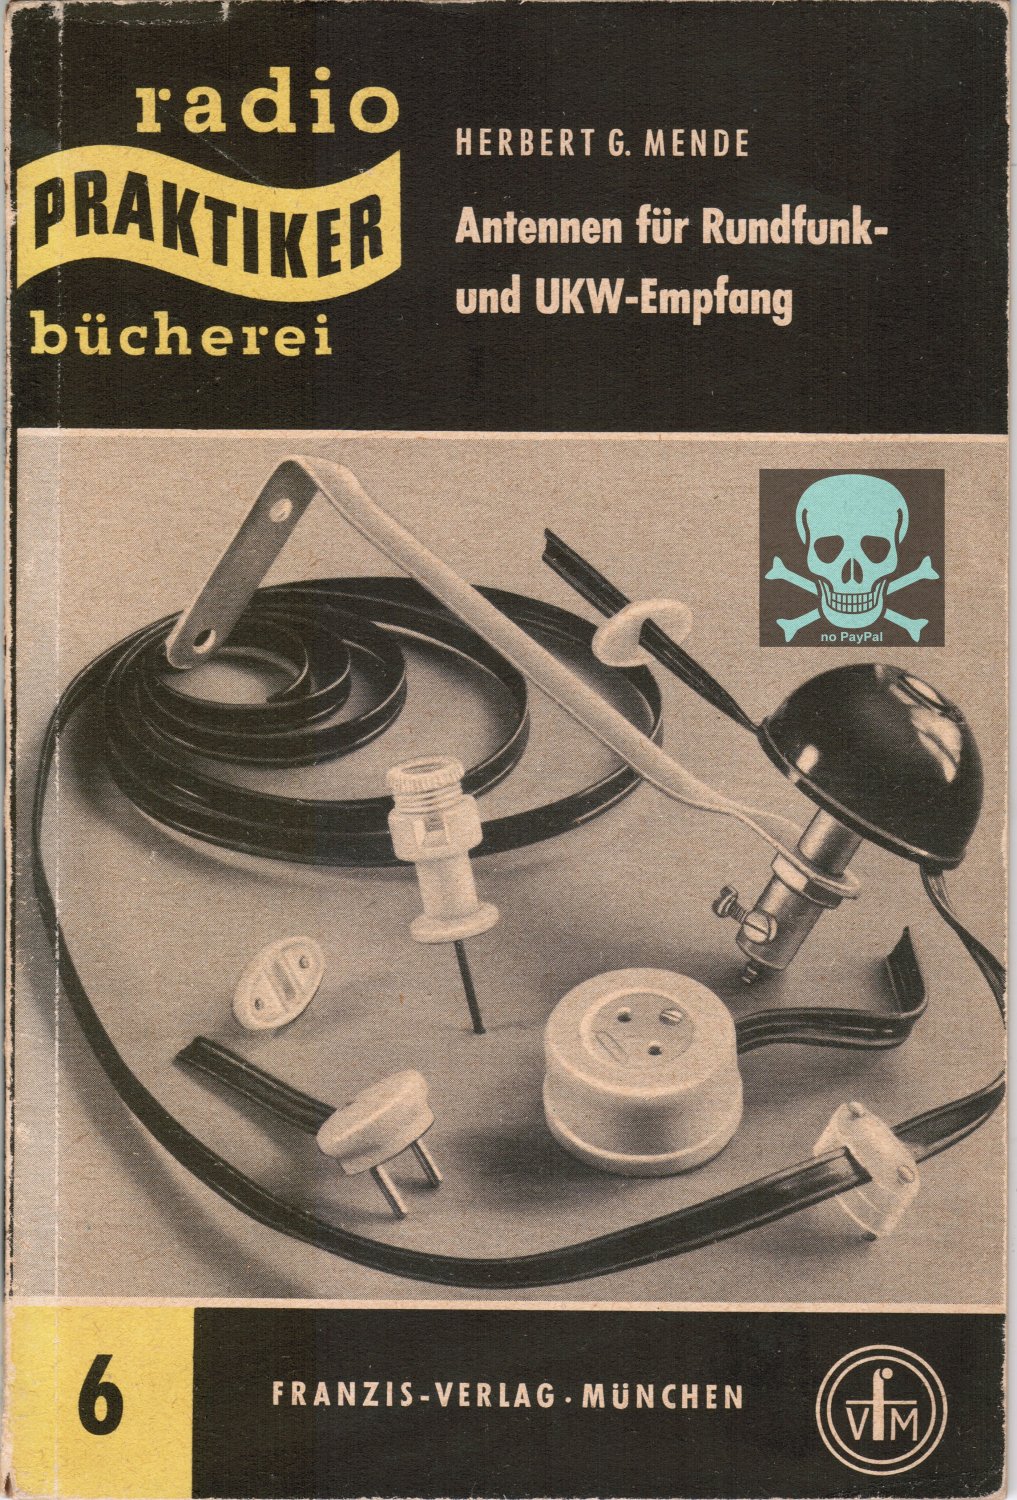 Antennen für Rundfunk- und UKW-Empfang, Band 6, 1955“ (Ing. Herbert Gerhard  Mende) – Buch antiquarisch kaufen – A01LcO4n01ZZE